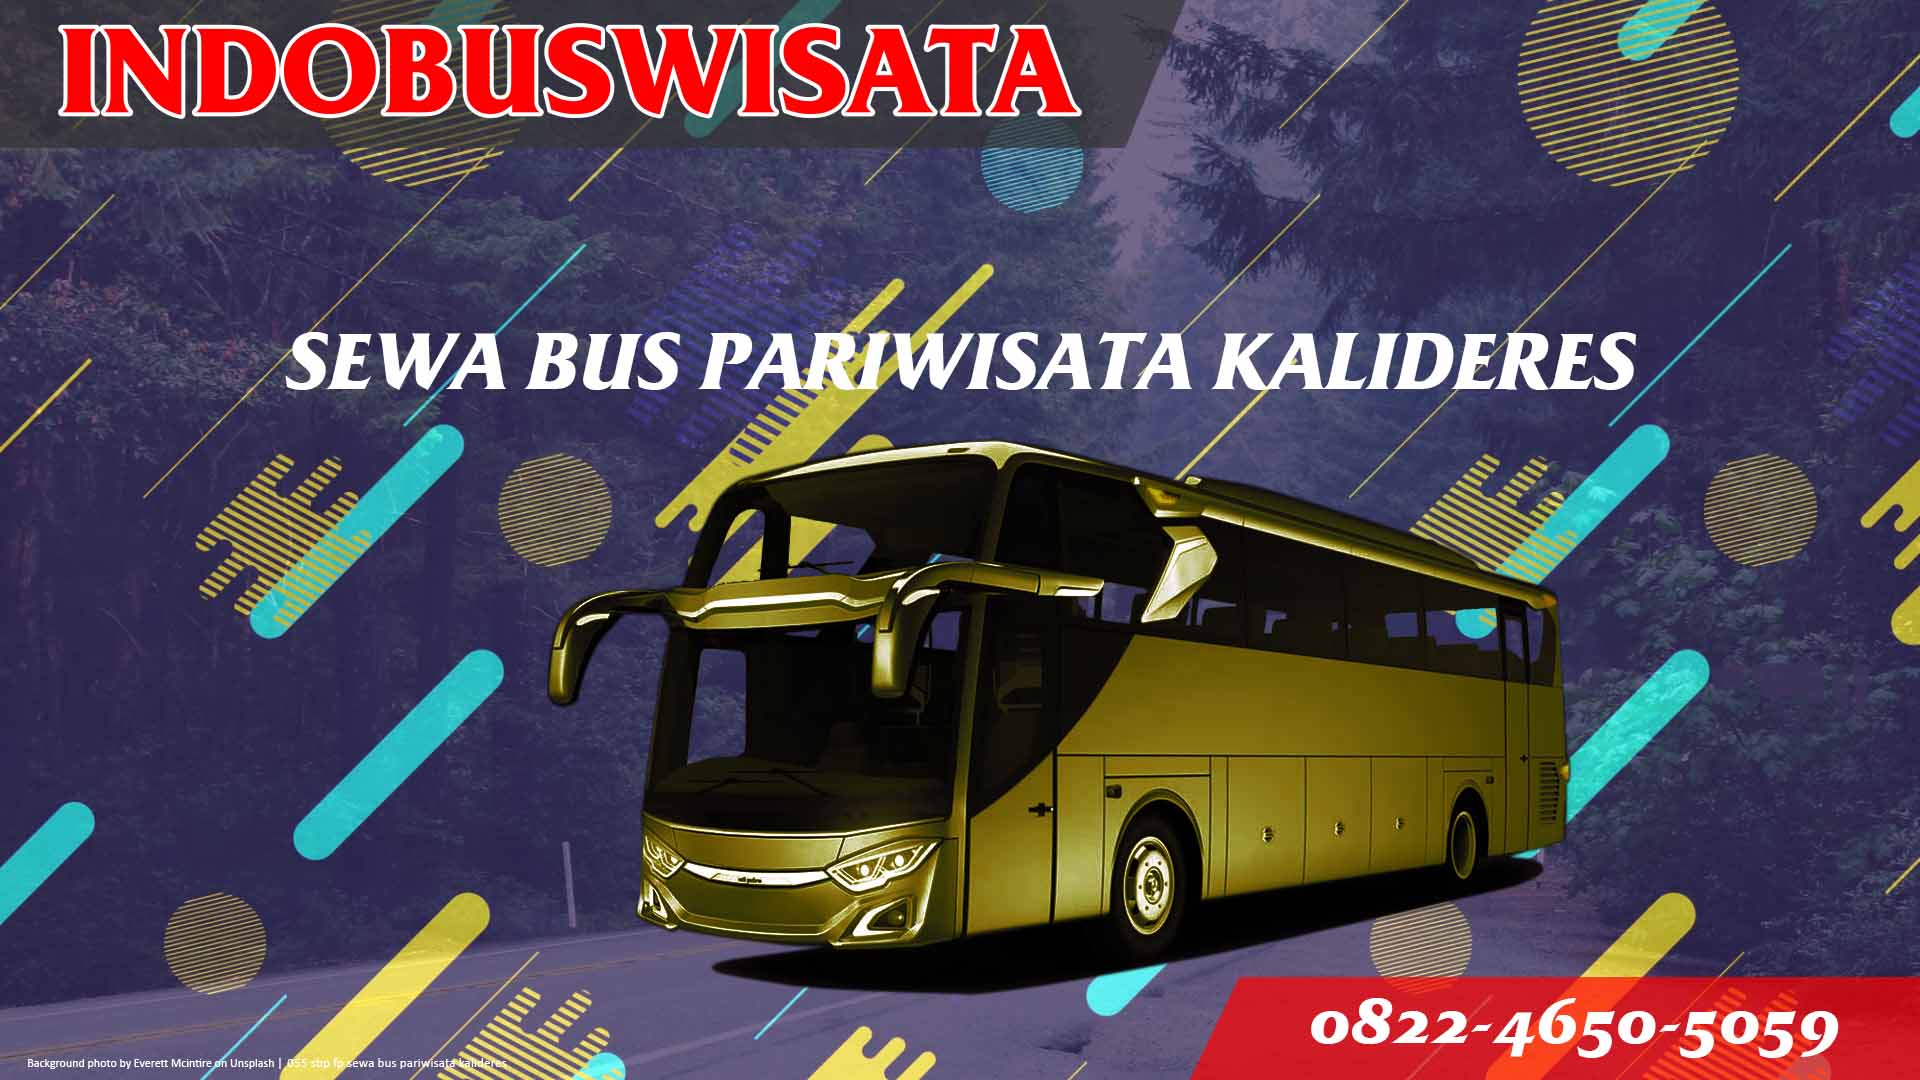 055 Sbp Fp Sewa Bus Pariwisata Kalideres Indobuswisata